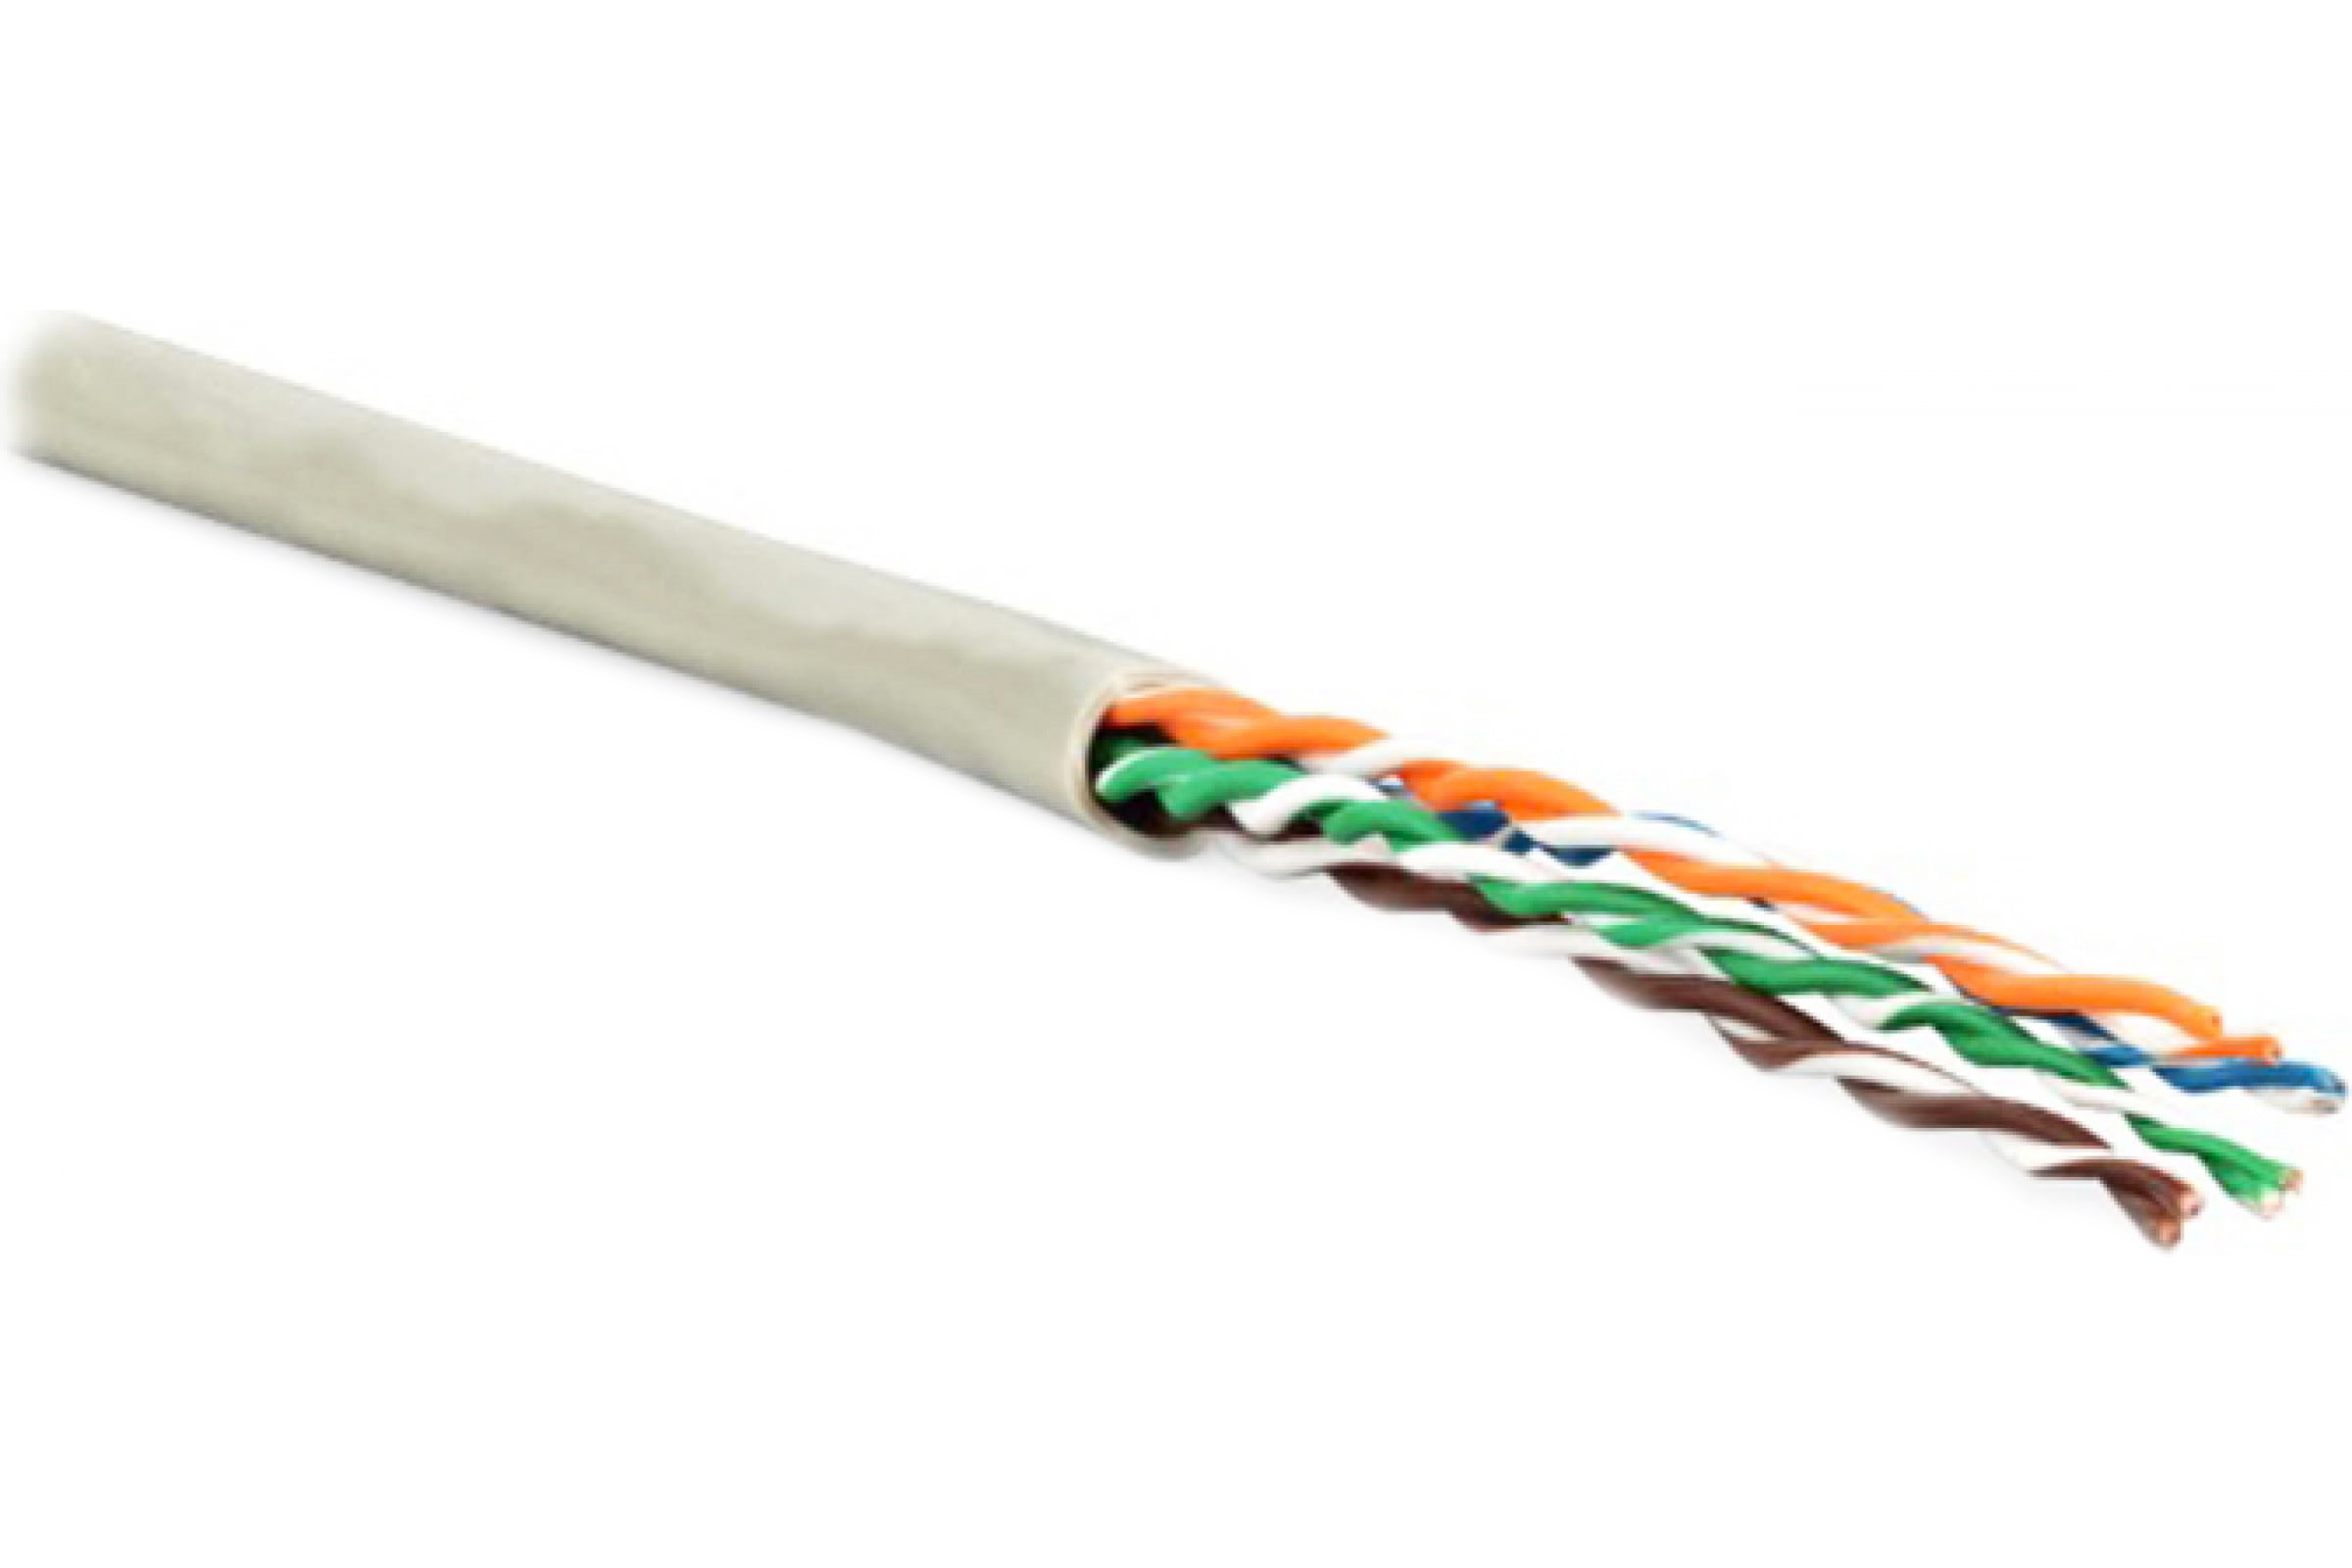 Кабель Hyperline кабель сетевой без разъемов 100м (243616) кабель hyperline кабель сетевой без разъемов 500м 236320